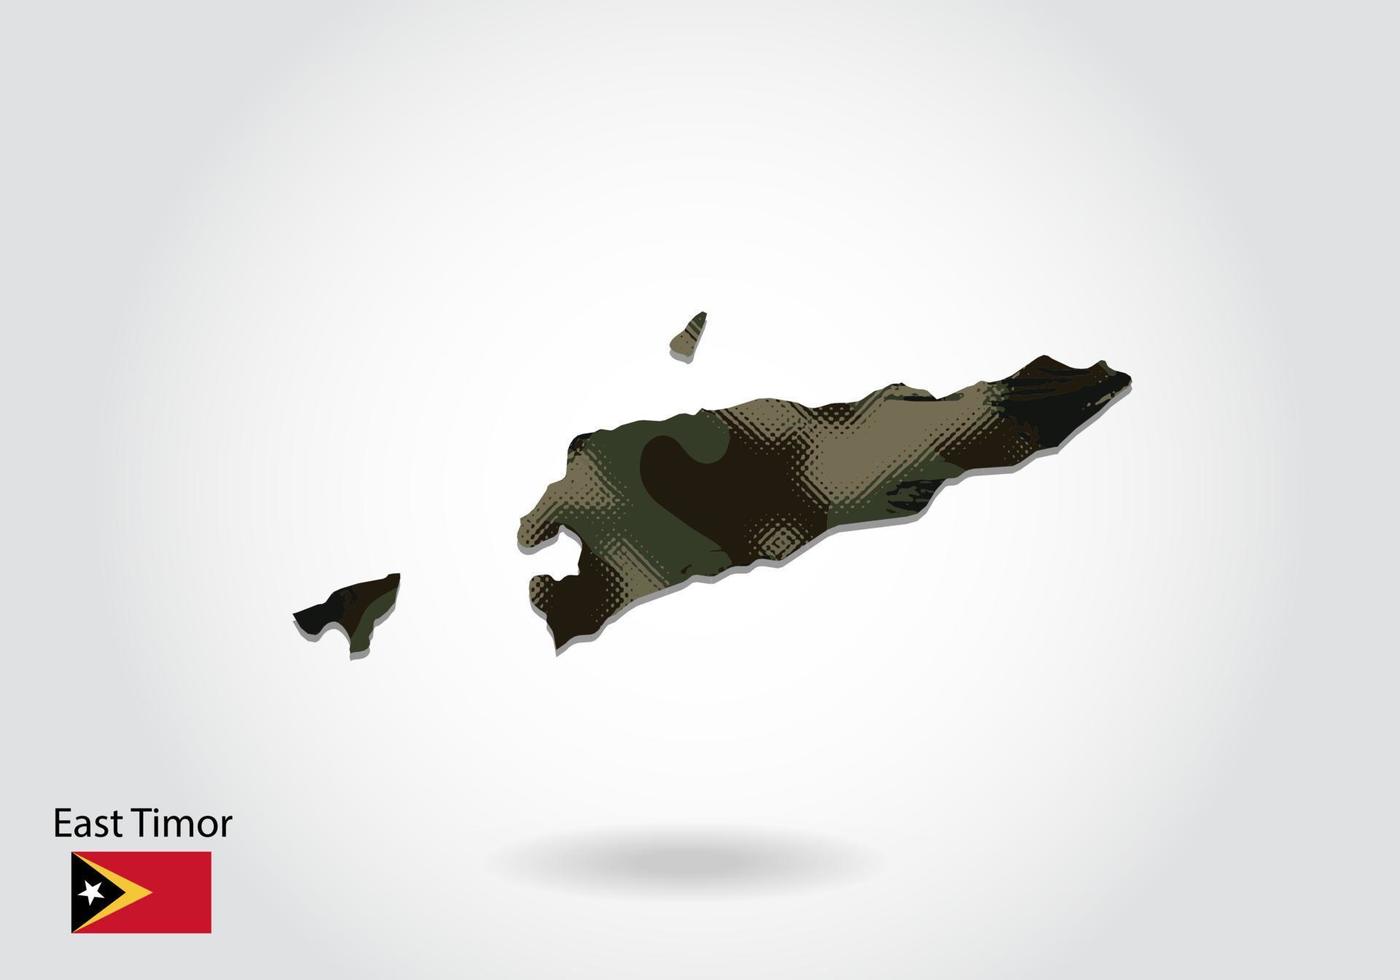 mapa de timor leste com padrão de camuflagem, floresta - textura verde no mapa. conceito militar para exército, soldado e guerra. brasão, bandeira. vetor